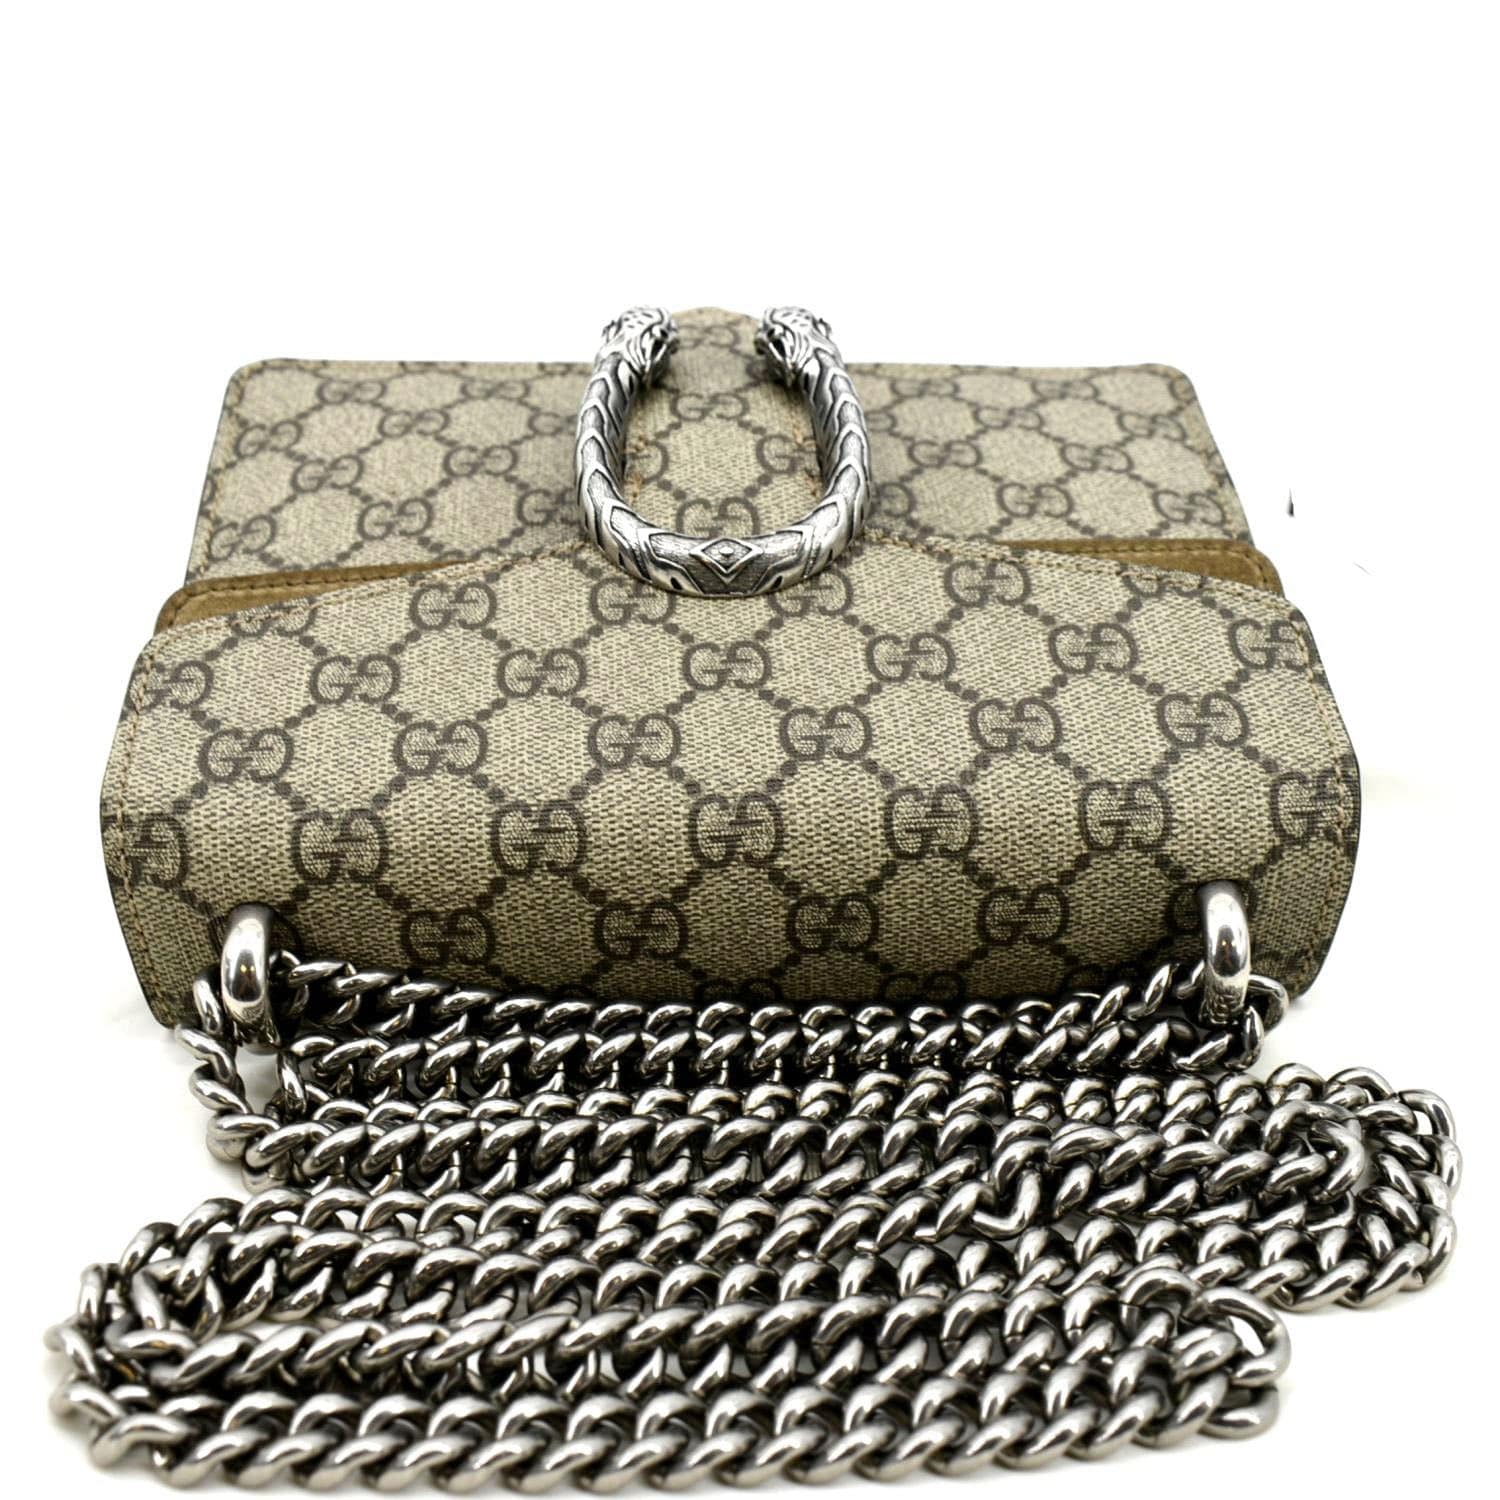 Gucci Mini GG Supreme Cross-Body Bag